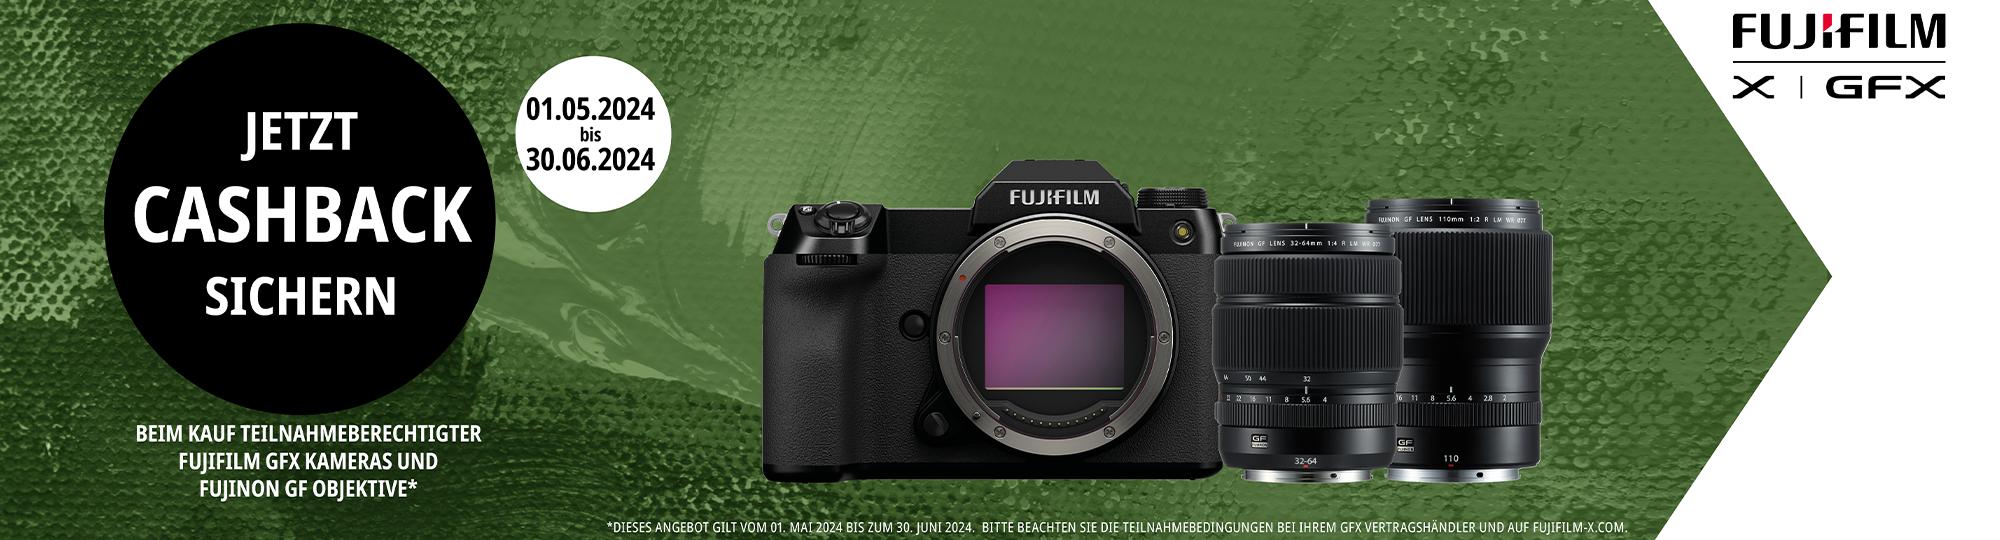 Grafik mit einem grünen Hintergrund. Im Vordergrund ist eine Kamera der Fujifilm GFX Serie sowie zwei Objektive abgebildet. Auf der Grafik ist der Text "Jetzt Cashback sichern" zu lesen. Auf der linken Seite befindet sich ein weißer Hintergrund sowie das Fujifilm Logo.